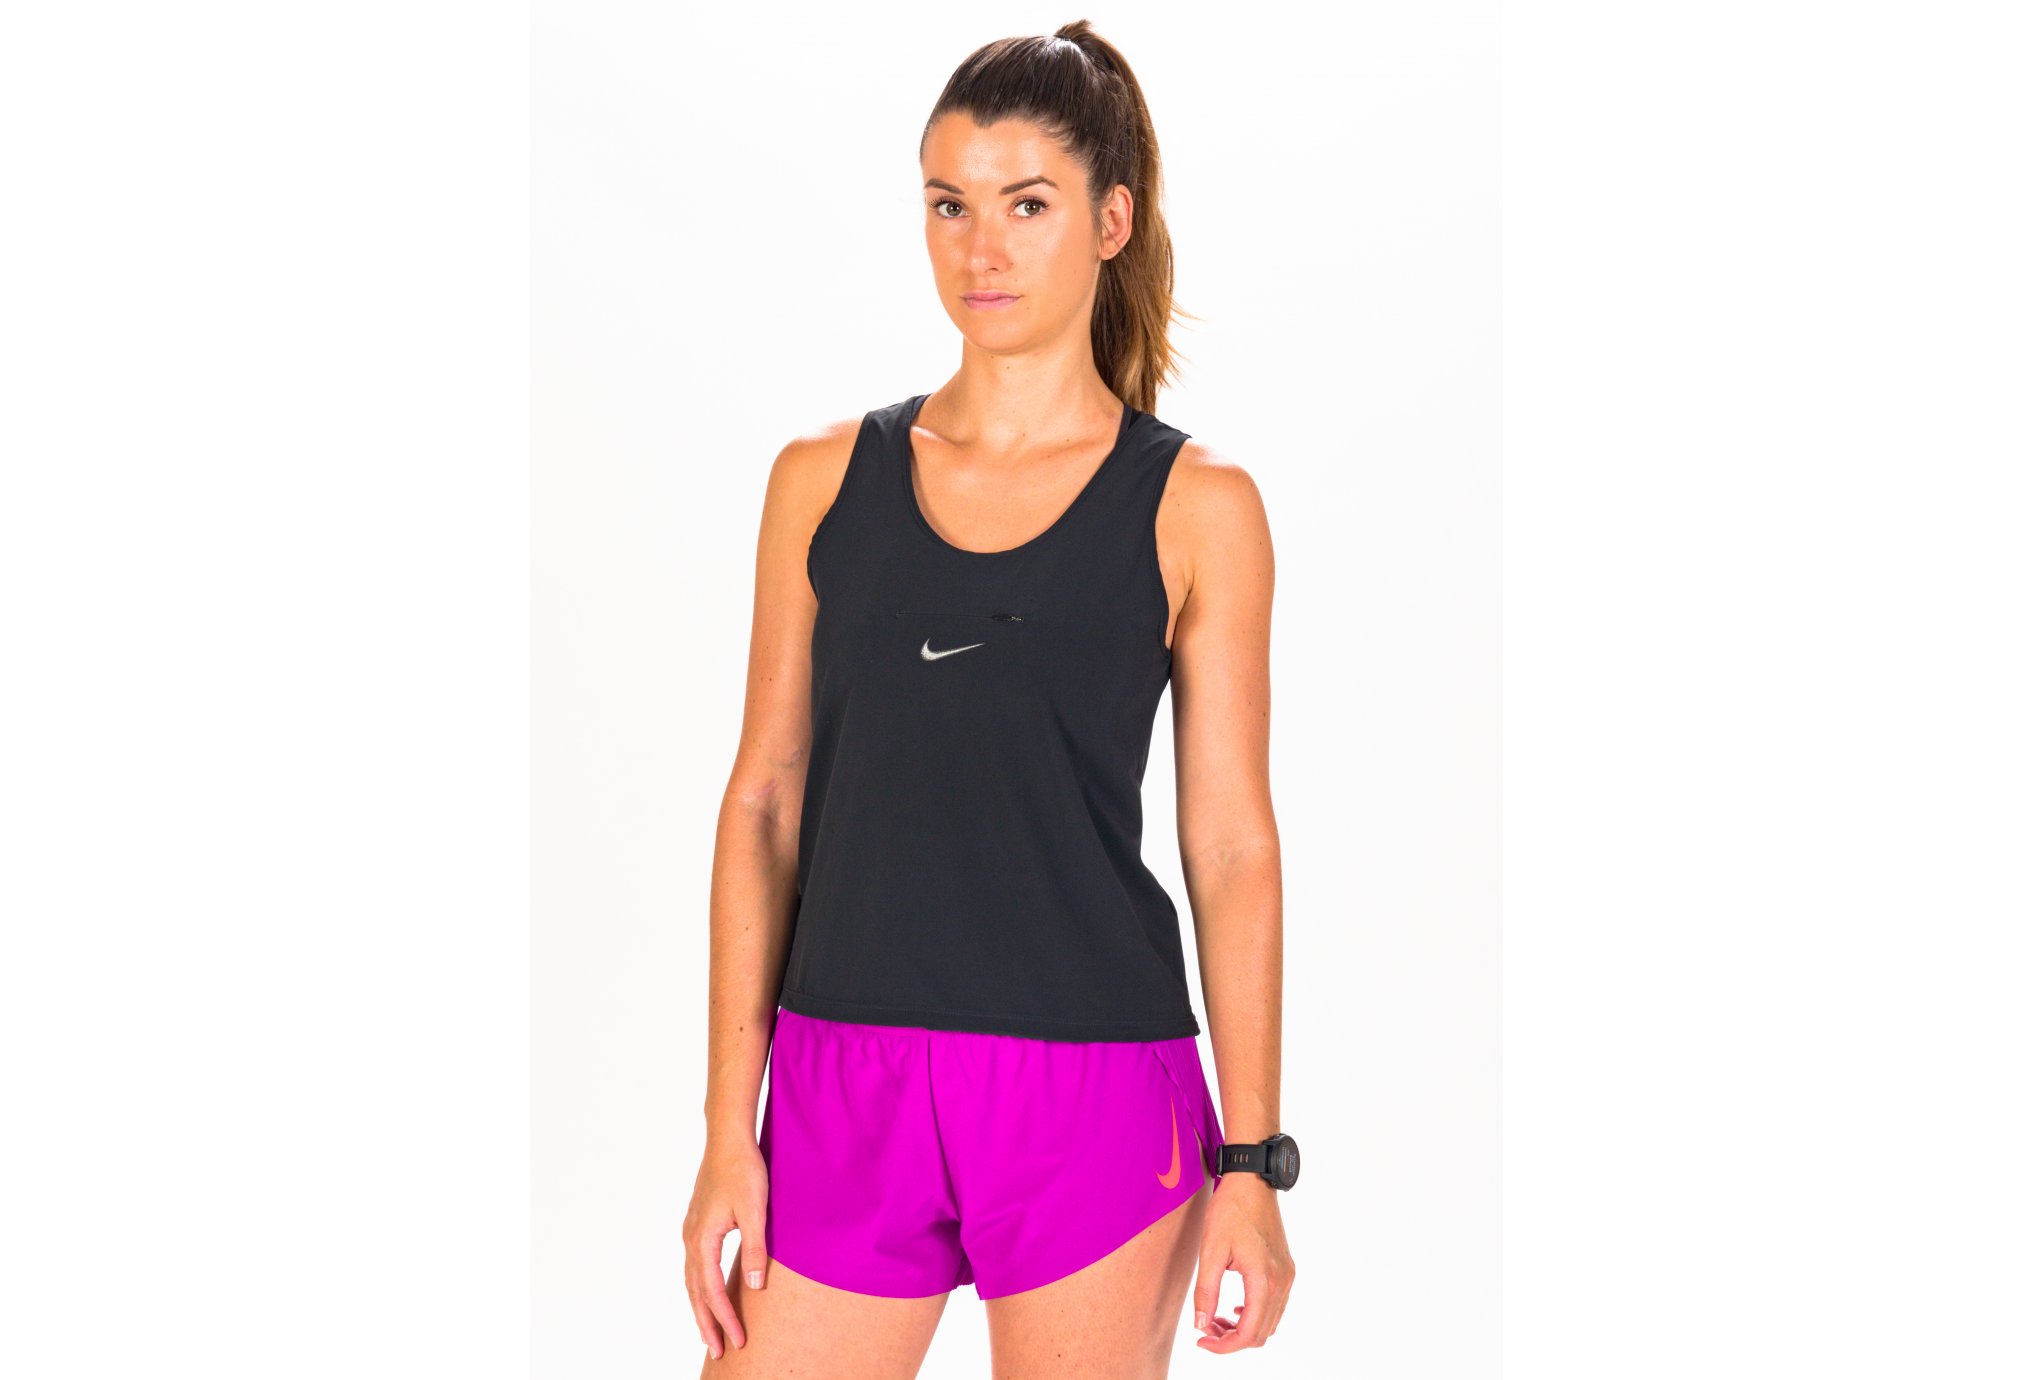 Débardeur Nike Running Division pour femme